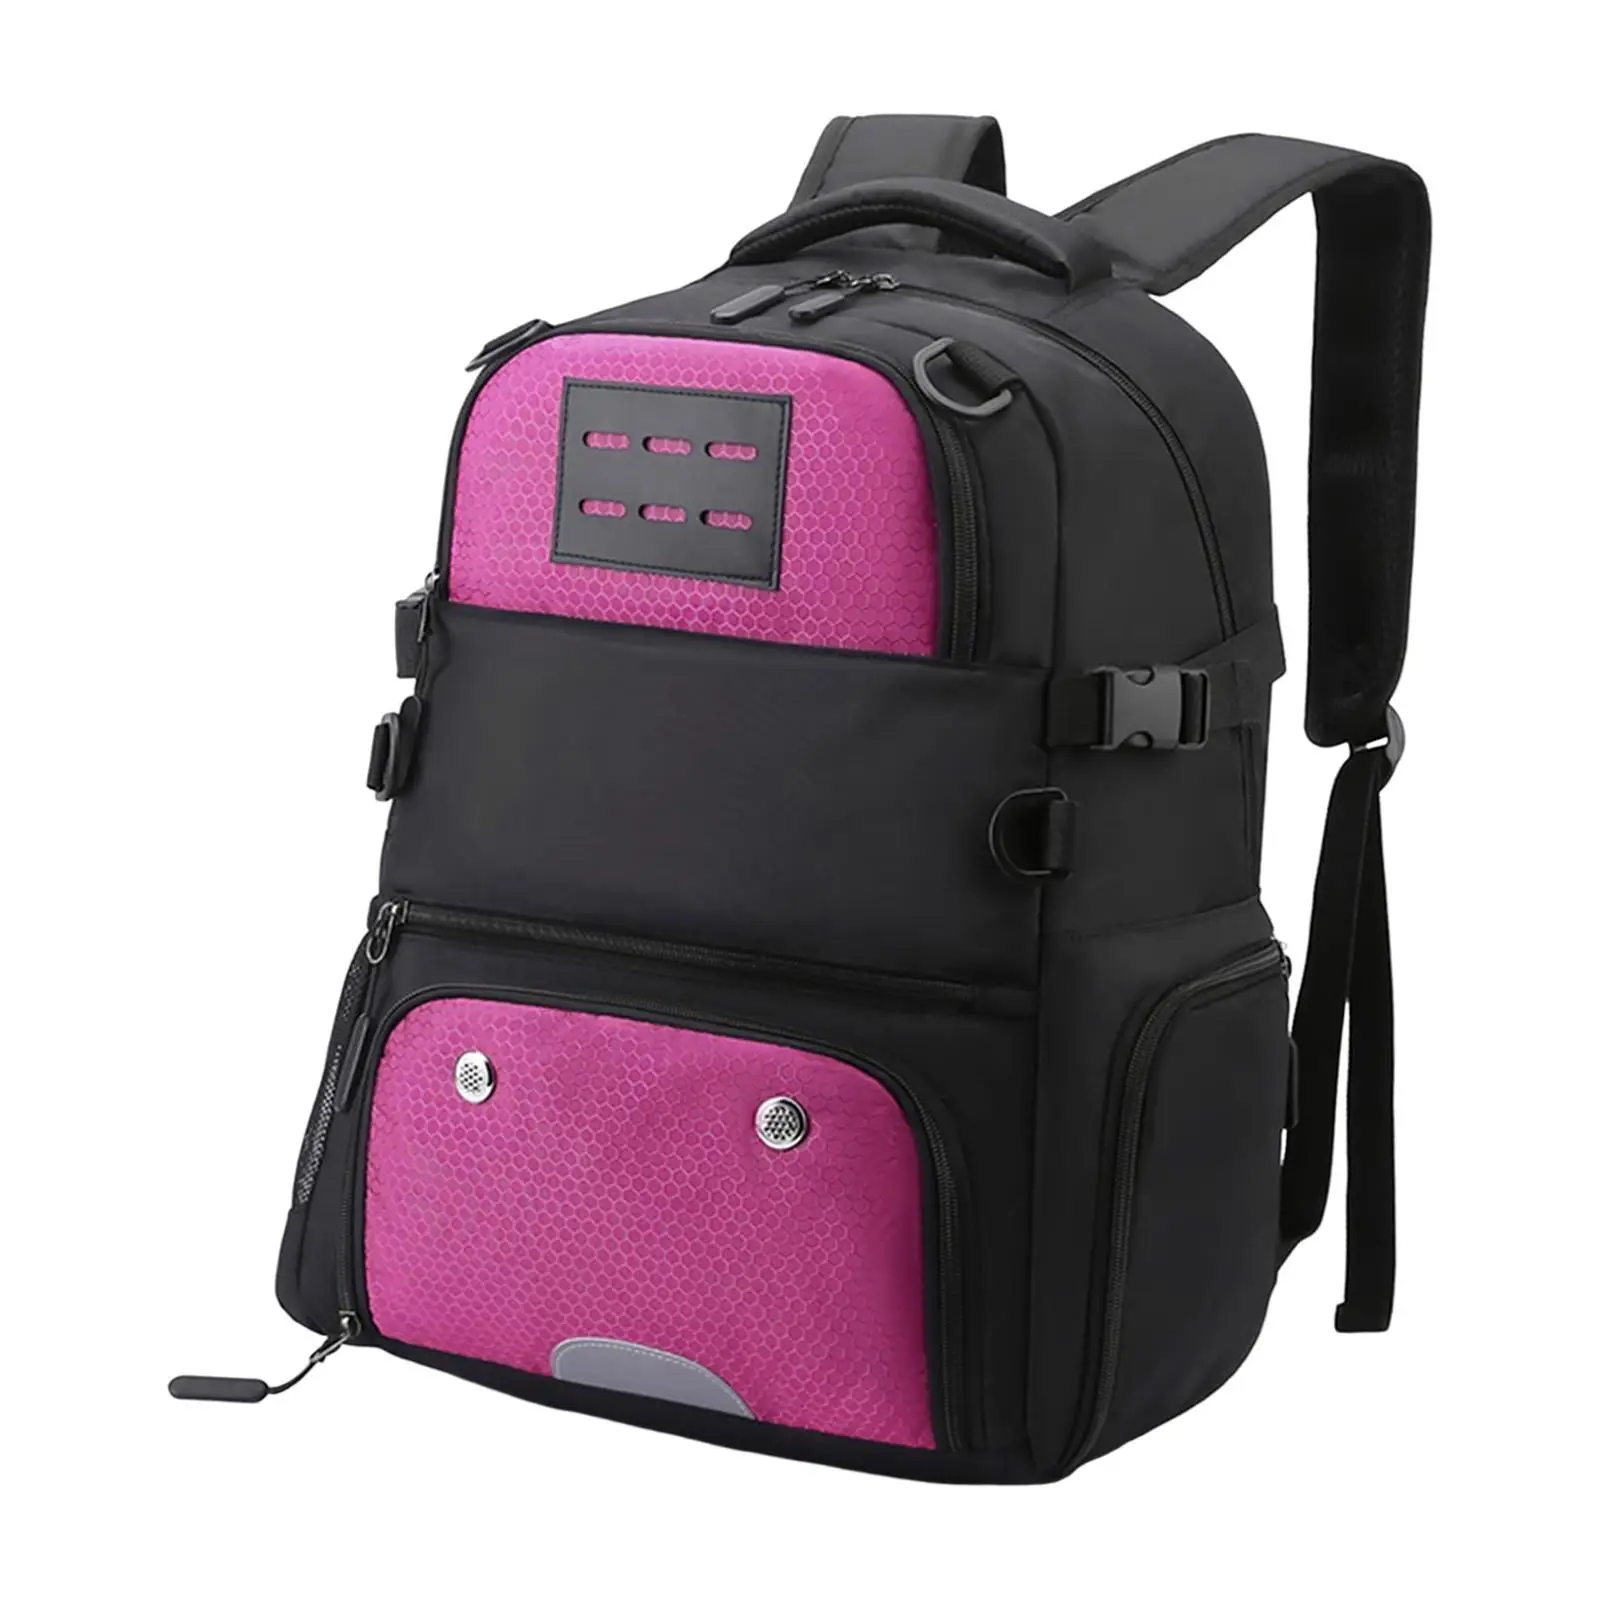 Basketball Football Backpack Pocket Rucksack Adjustable Laptop Bag Soccer Bag for Volleyball Gym Sports Boys Girls